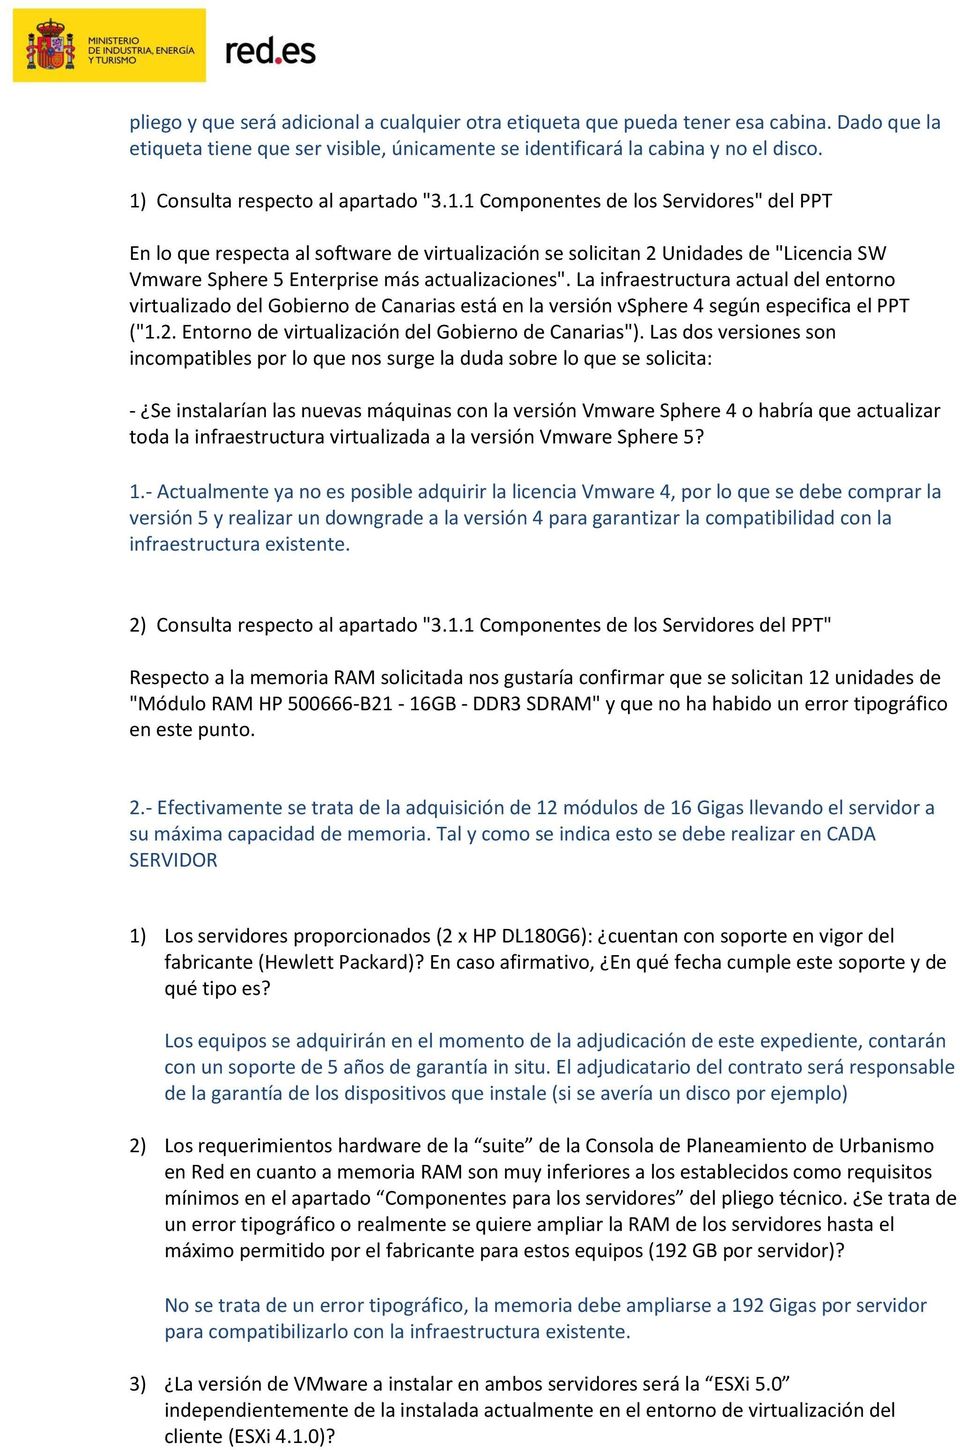 La infraestructura actual del entorno virtualizado del Gobierno de Canarias está en la versión vsphere 4 según especifica el PPT ("1.2. Entorno de virtualización del Gobierno de Canarias").